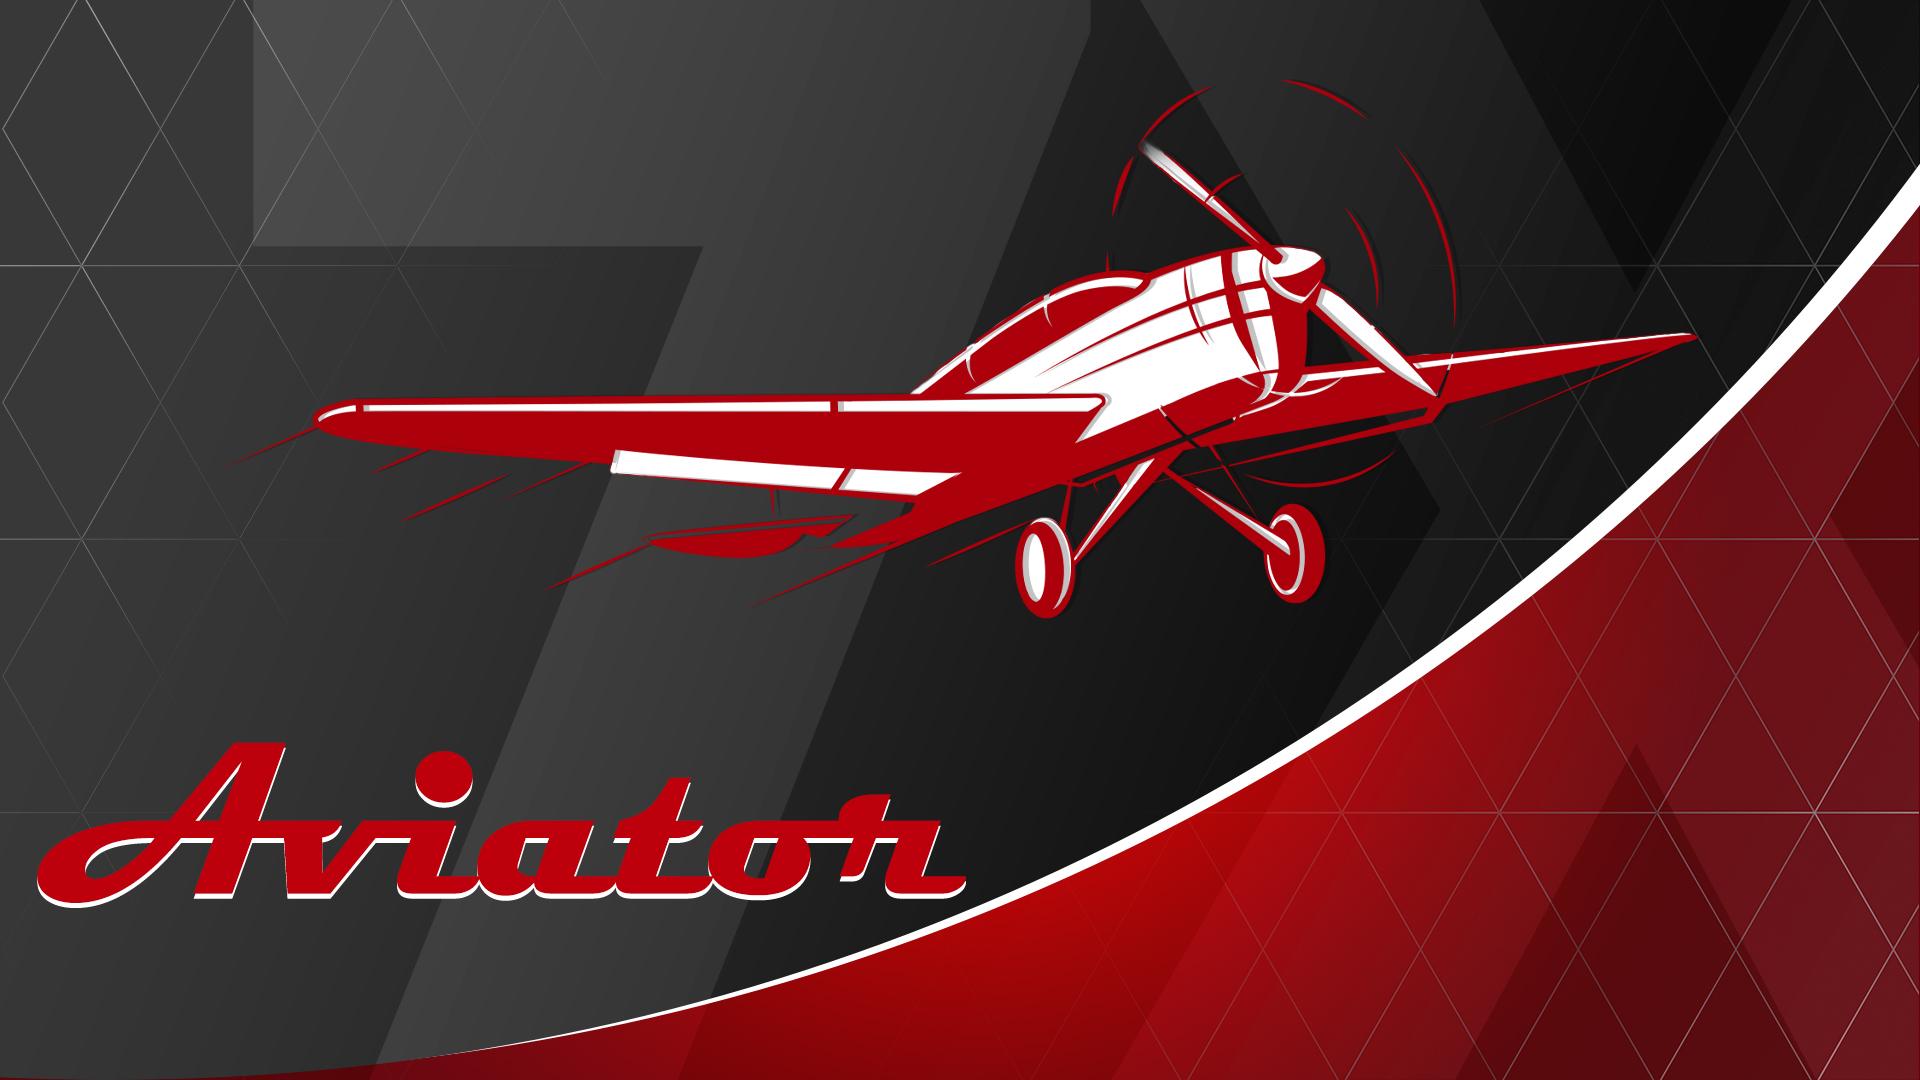 Aviator игра aviator igra1. Авиатор игра. Aviator spribe. Авиатор игра лого. Автомат Авиатор игровой.